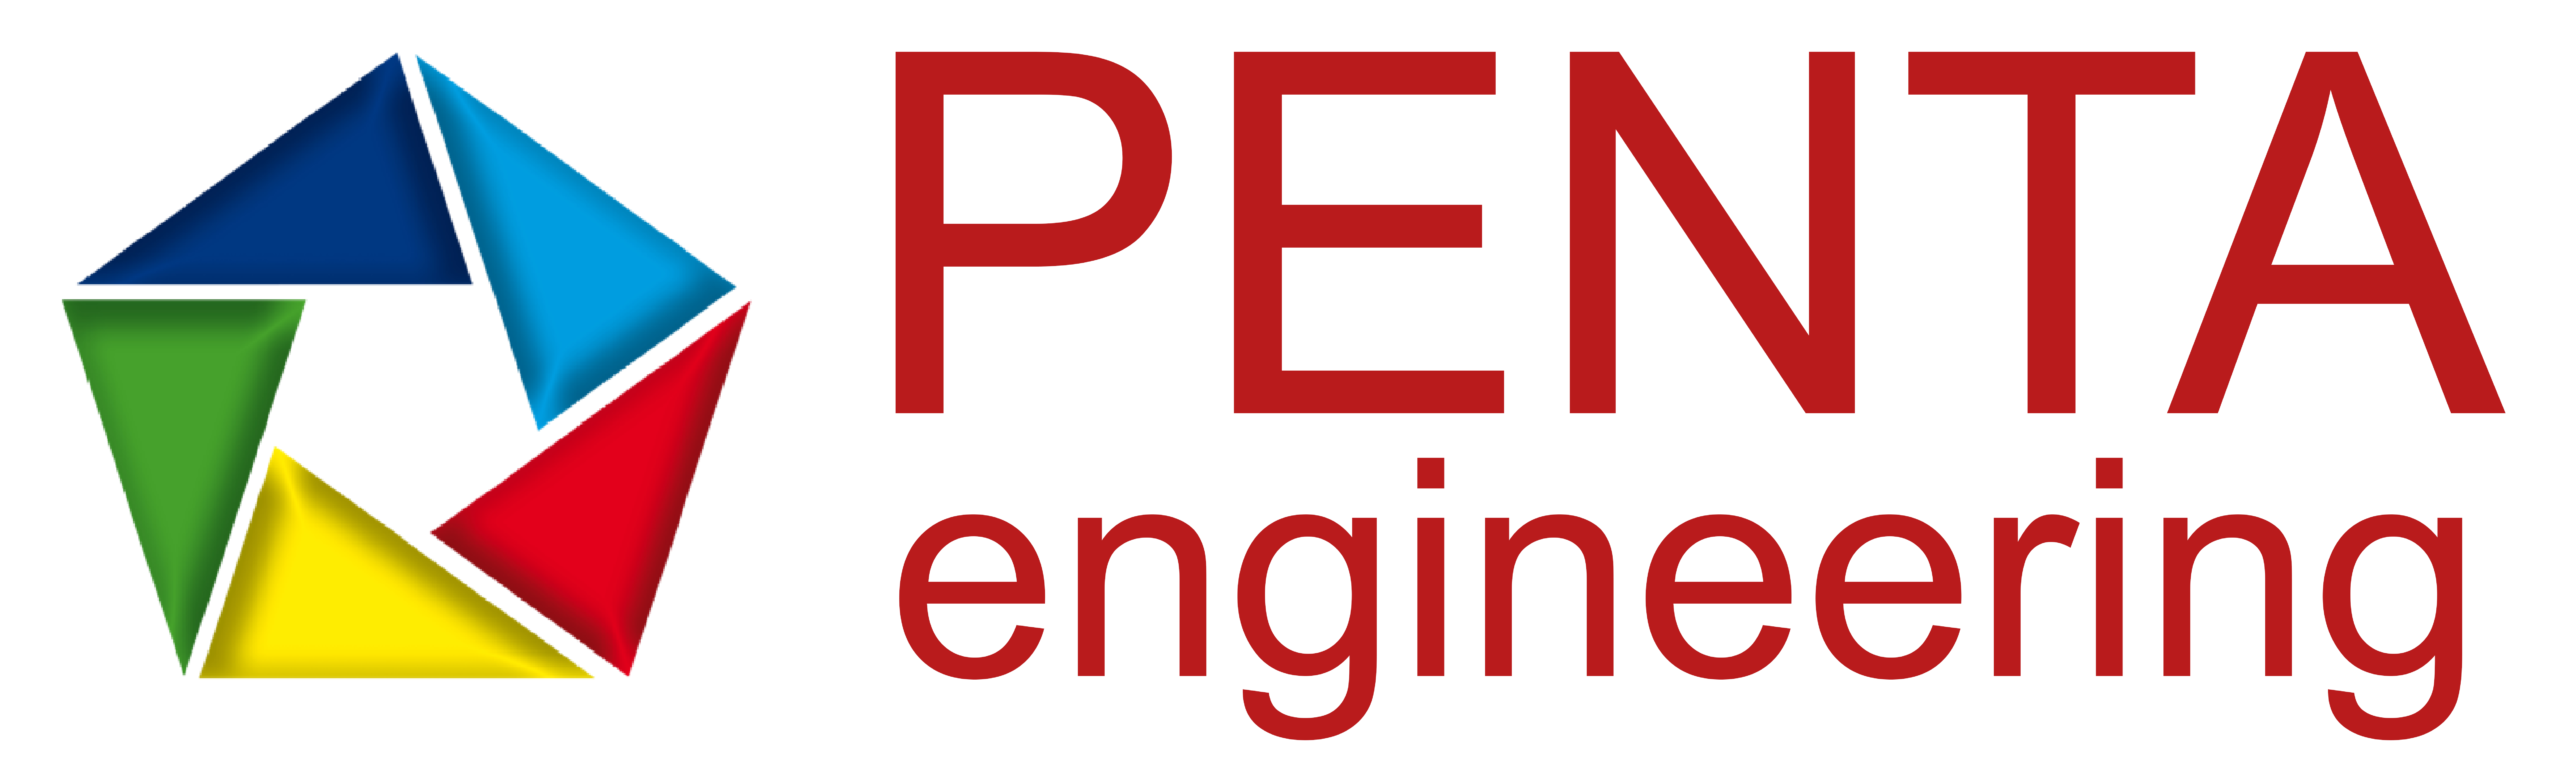 Penta Engineering